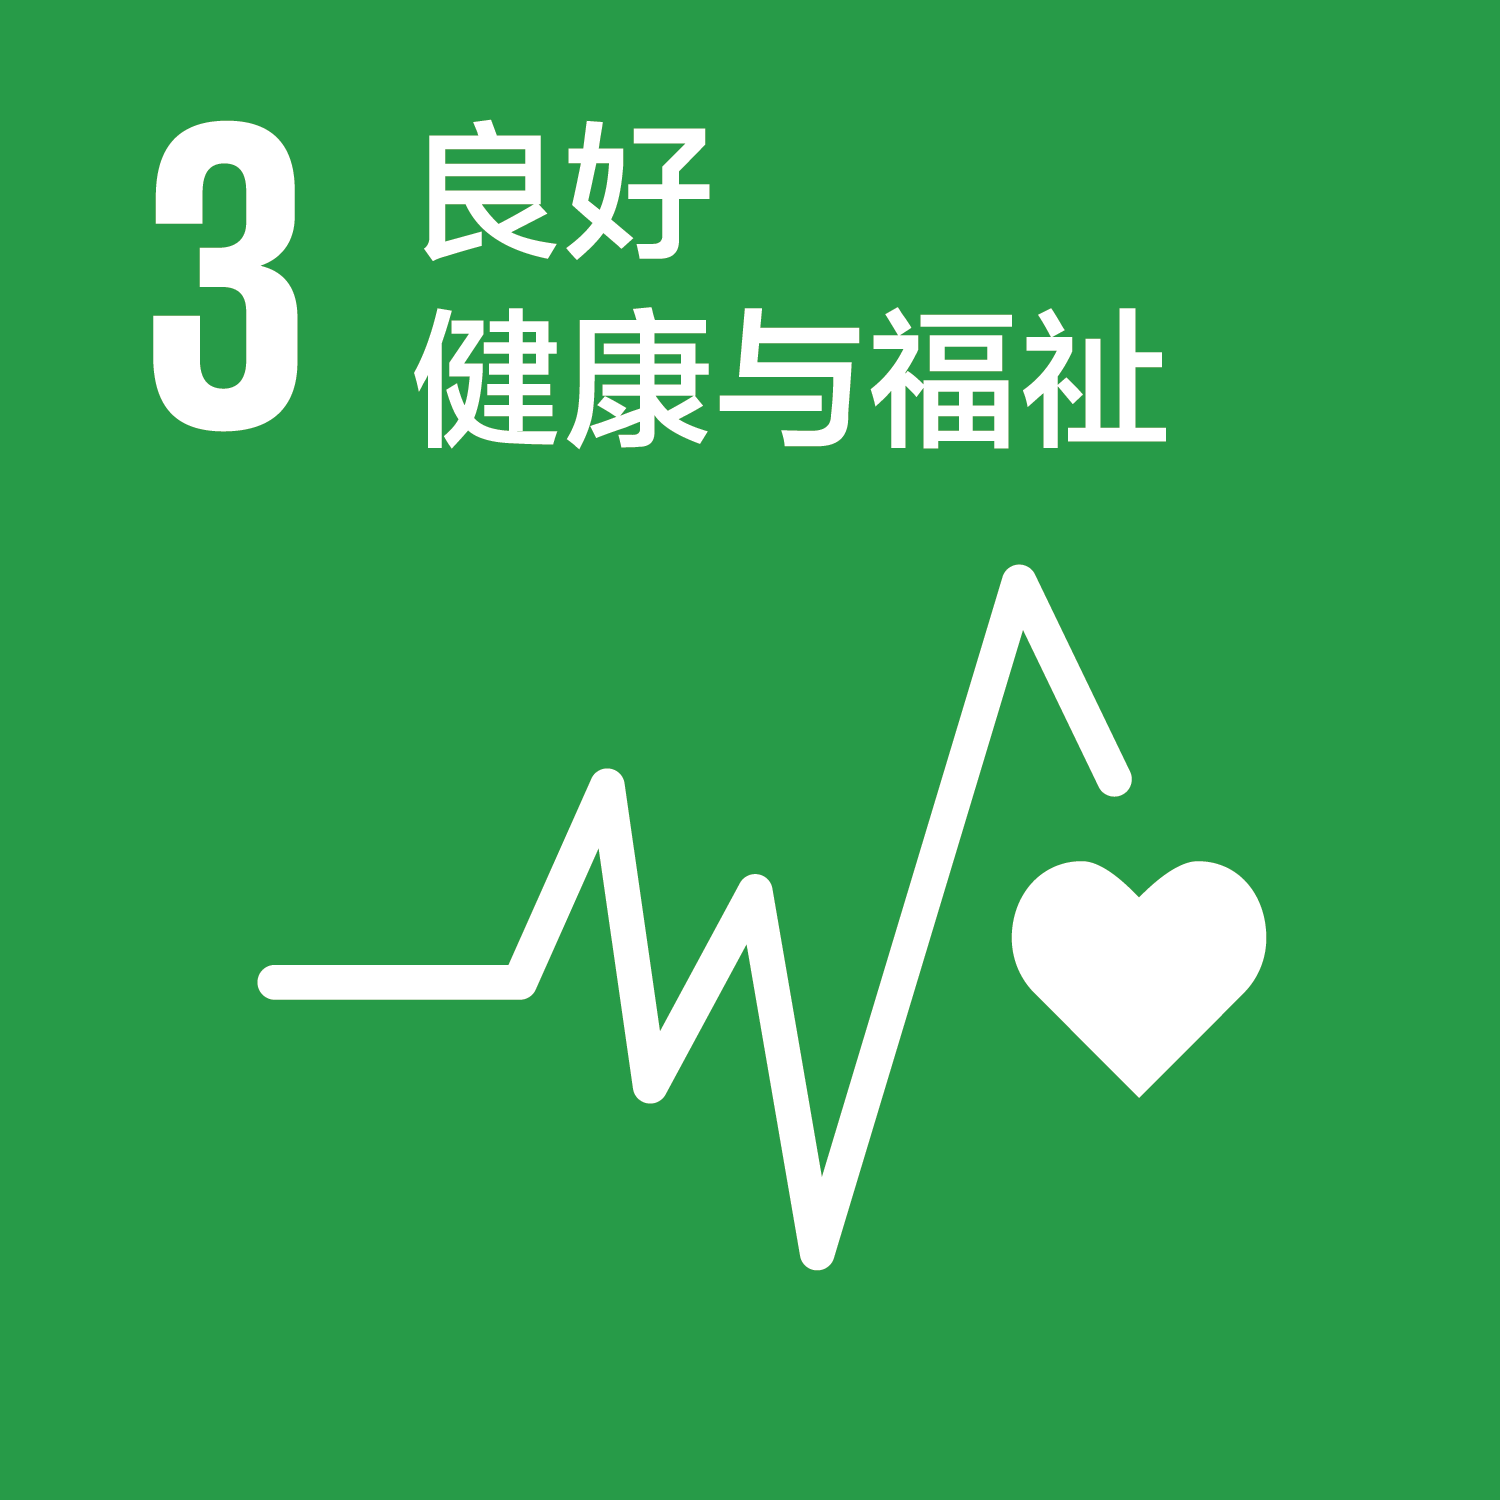 可持续发展目标-3良好健康与福祉